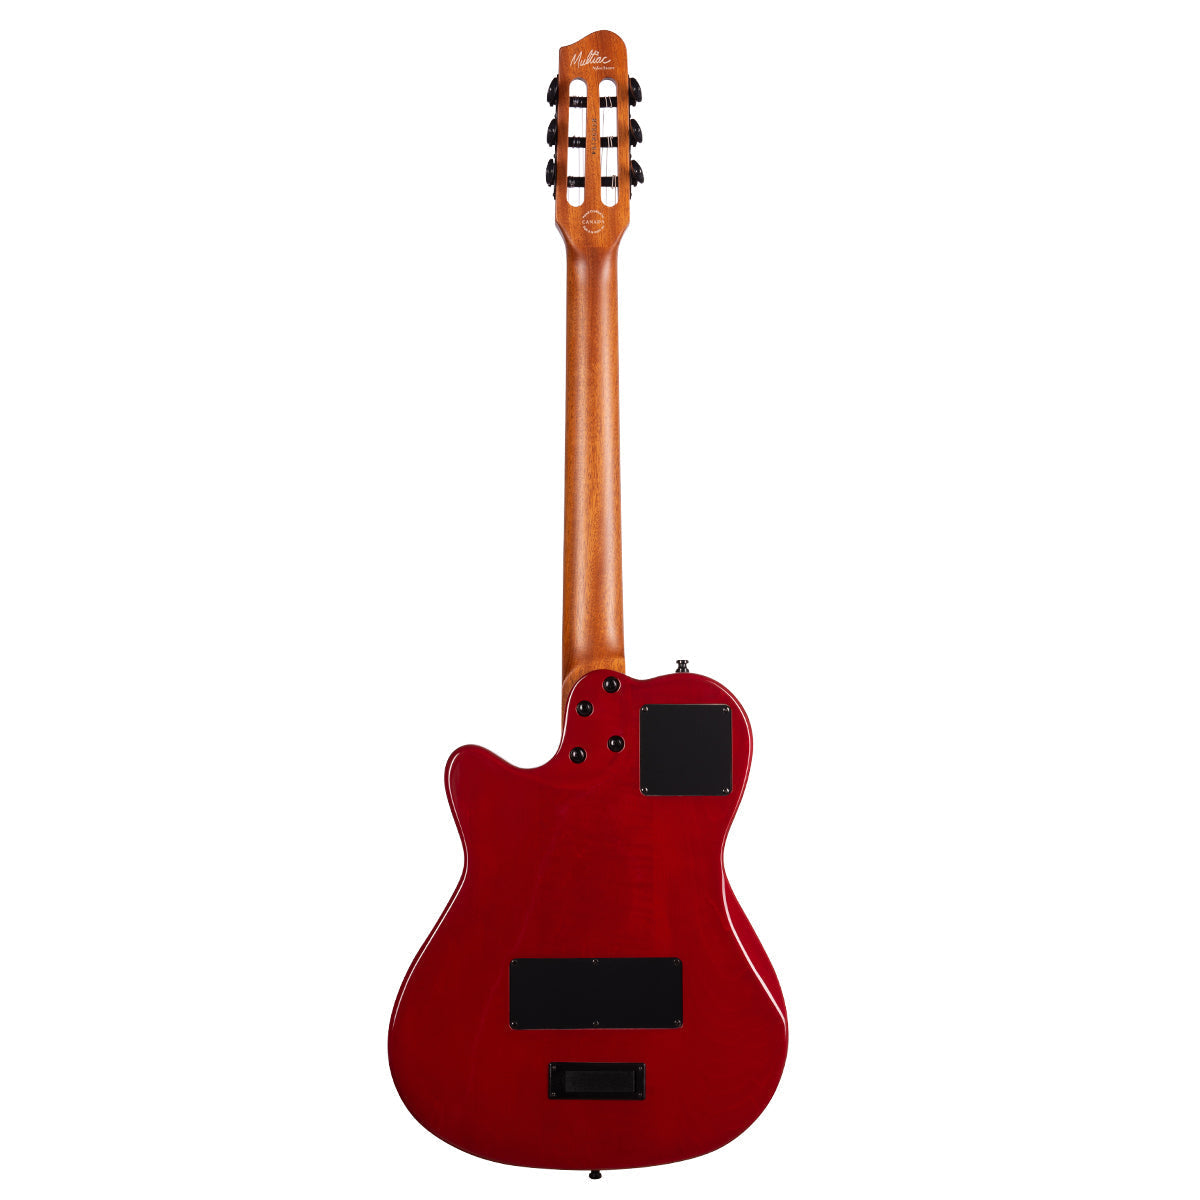 Godin Multiac Mundial Electric Guitar ~ Arctik Red, Electric Guitar for sale at Richards Guitars.